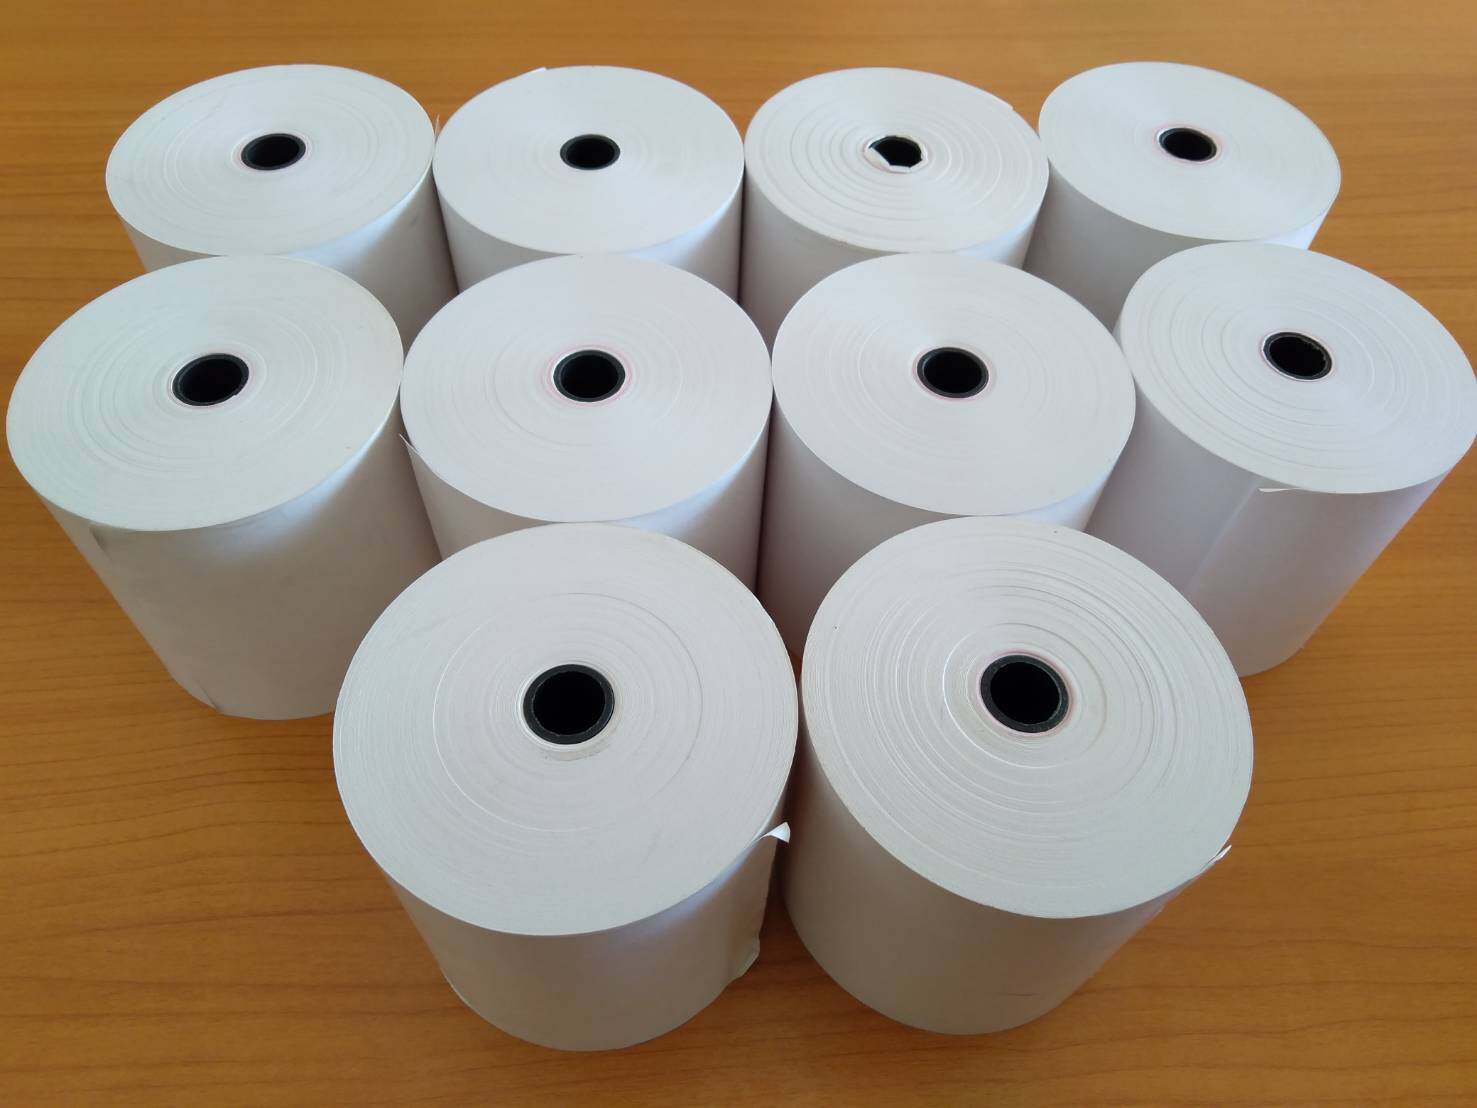 กระดาษสลิป 75 mm. X 75 mm. (ขายยกแพ็ค 10 ม้วน ตามรูป) ใช้กับเครื่องพิมพ์แบบเข็มกระแทก ม้วนกระดาษสลิป กระดาษสลิปใบเสร็จ กระดาษปริ้นสลิปใบเสร็จ